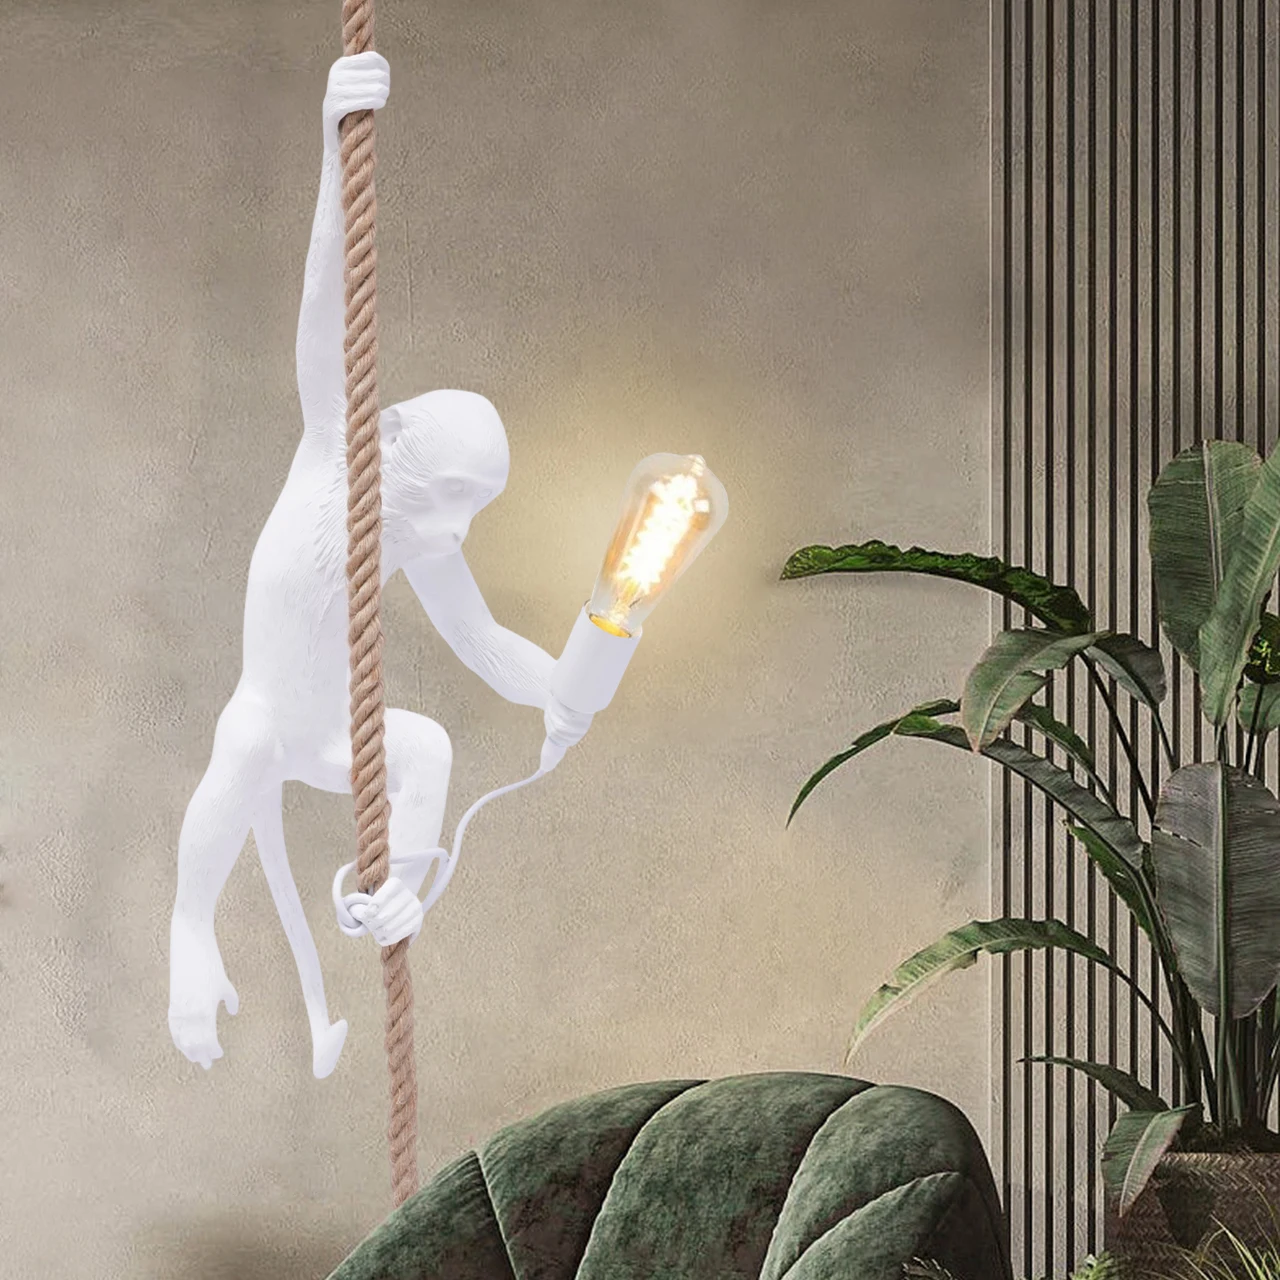 

Creative Monkey Pendant Light Resin LED Hemp Rope Lamp Vintage Home Decor Chandelier For Bedroom Lighting Fixture White/Gold